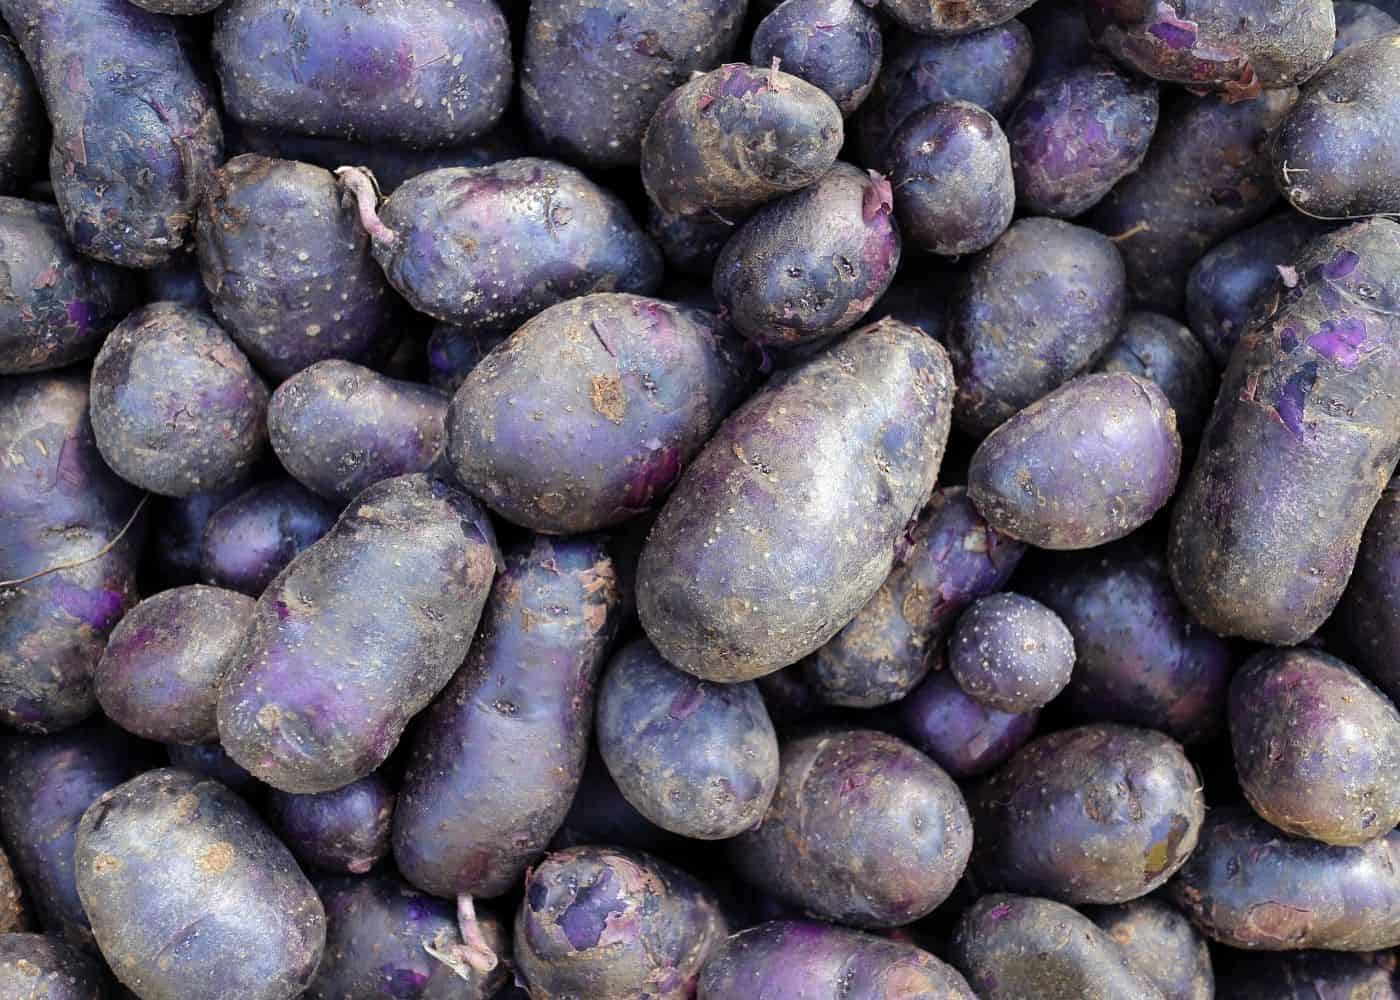 Purple majesty potatoes